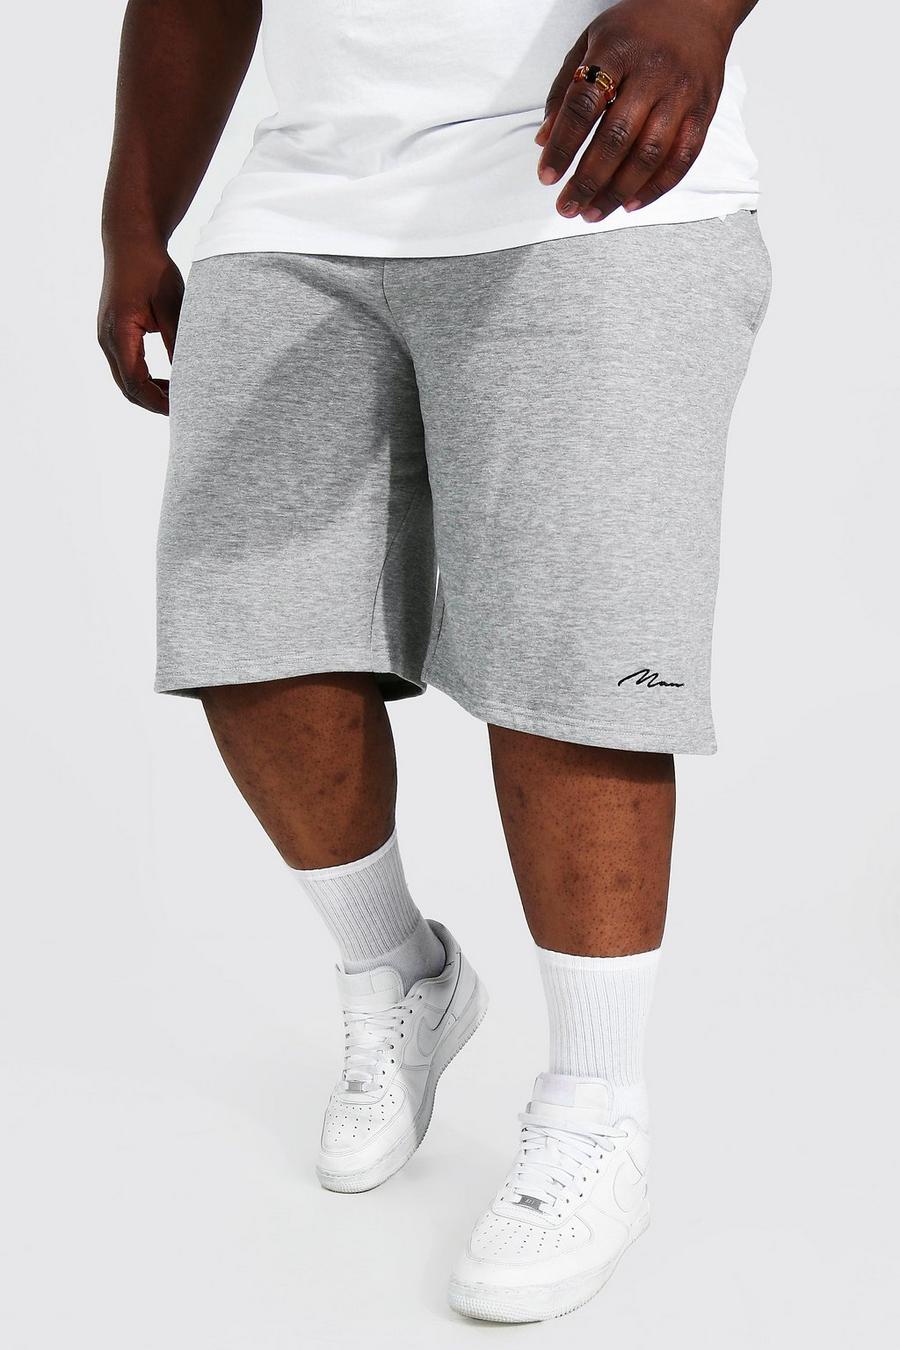 Pantaloncini Plus Size comodi in jersey riciclato con scritta Man, Grey marl grigio